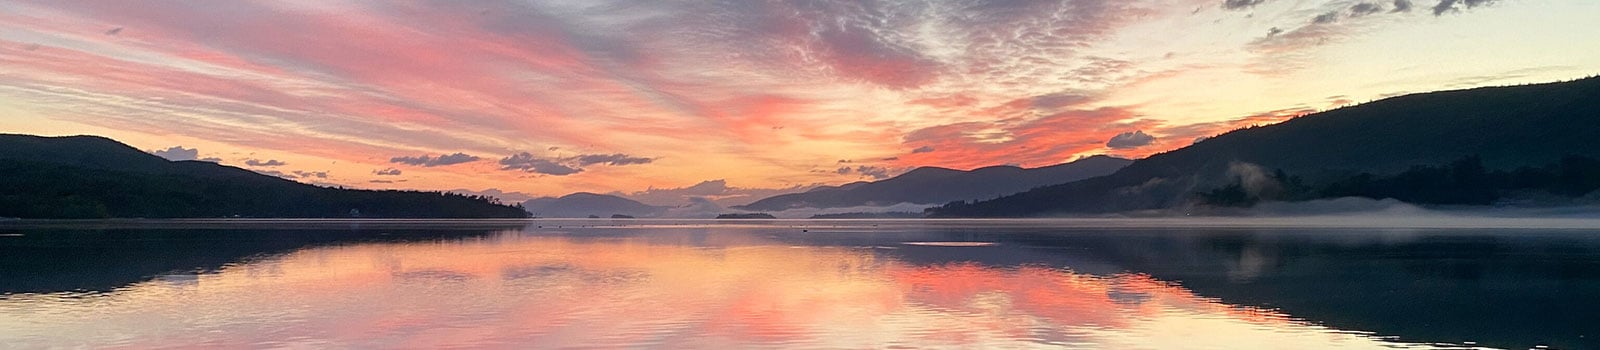 Sunrise on Lake George